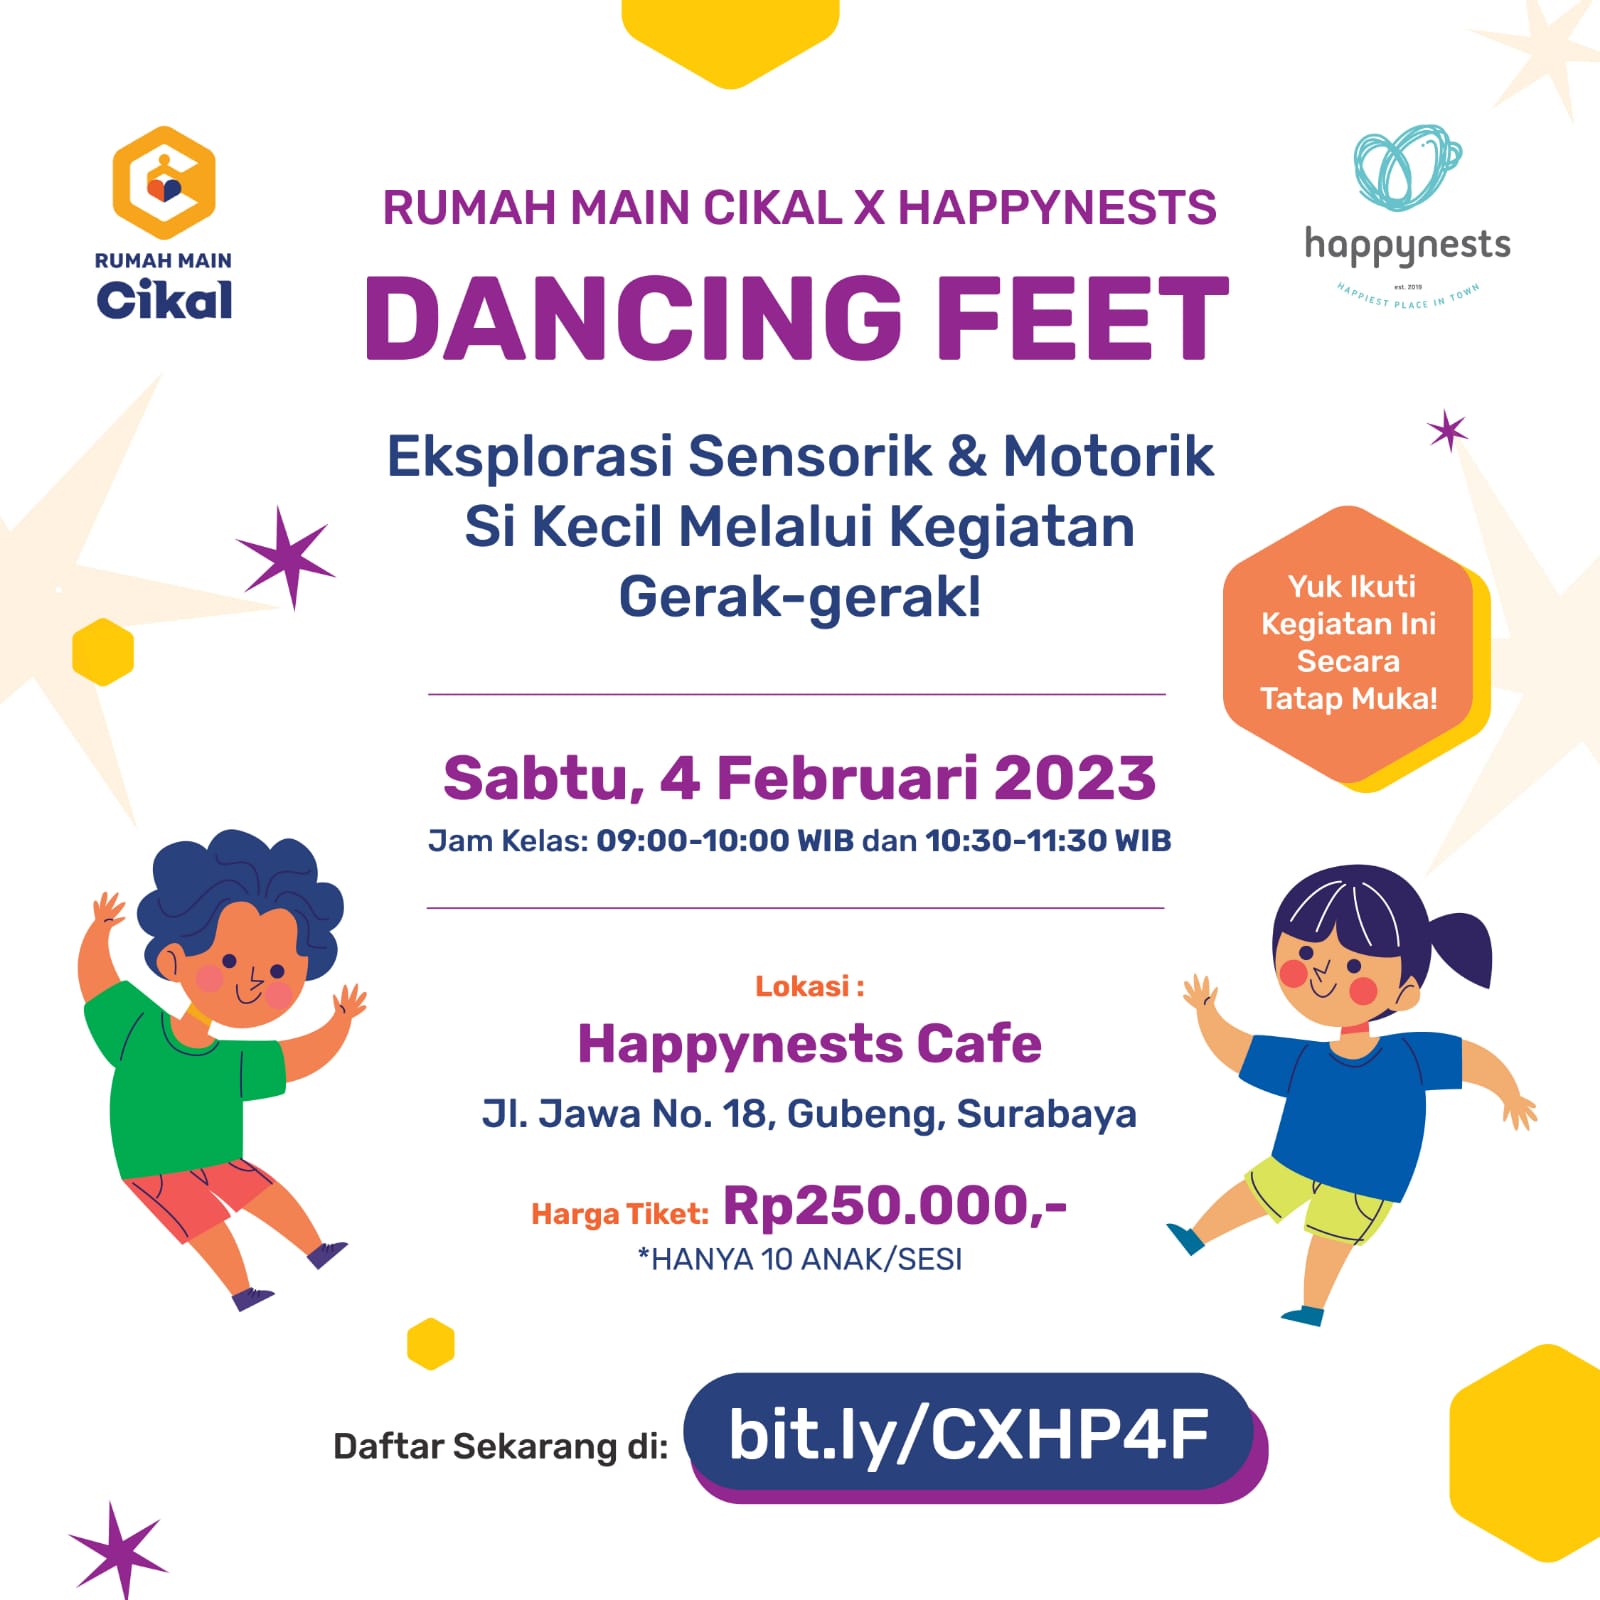 Dancing Feet : Eksplorasi Sensorik dan Motorik Bersama Rumah Main Cikal Surabaya dan Happynests